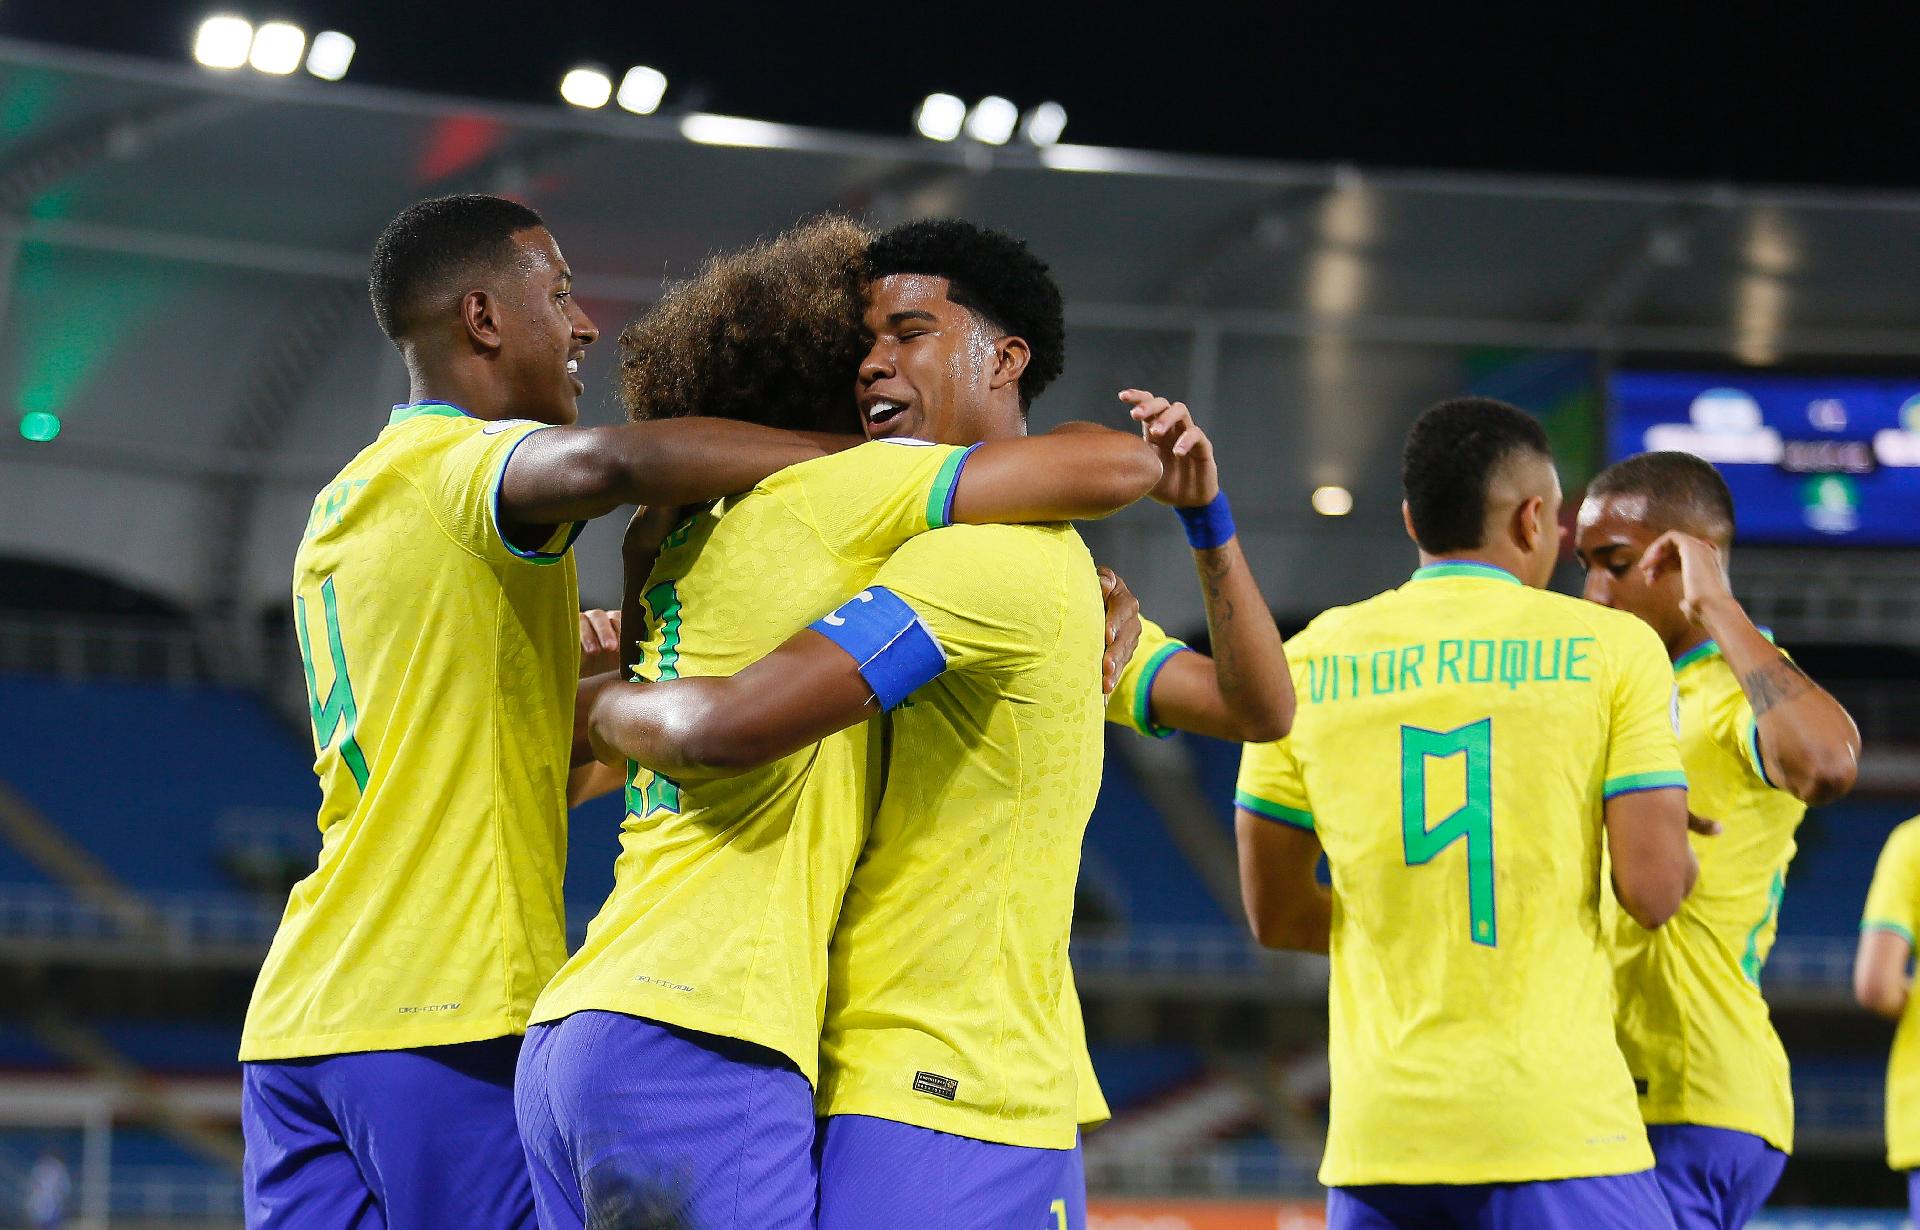 Torneio Internacional Sub-20: Assista ao vivo e de graça Brasil x Equador